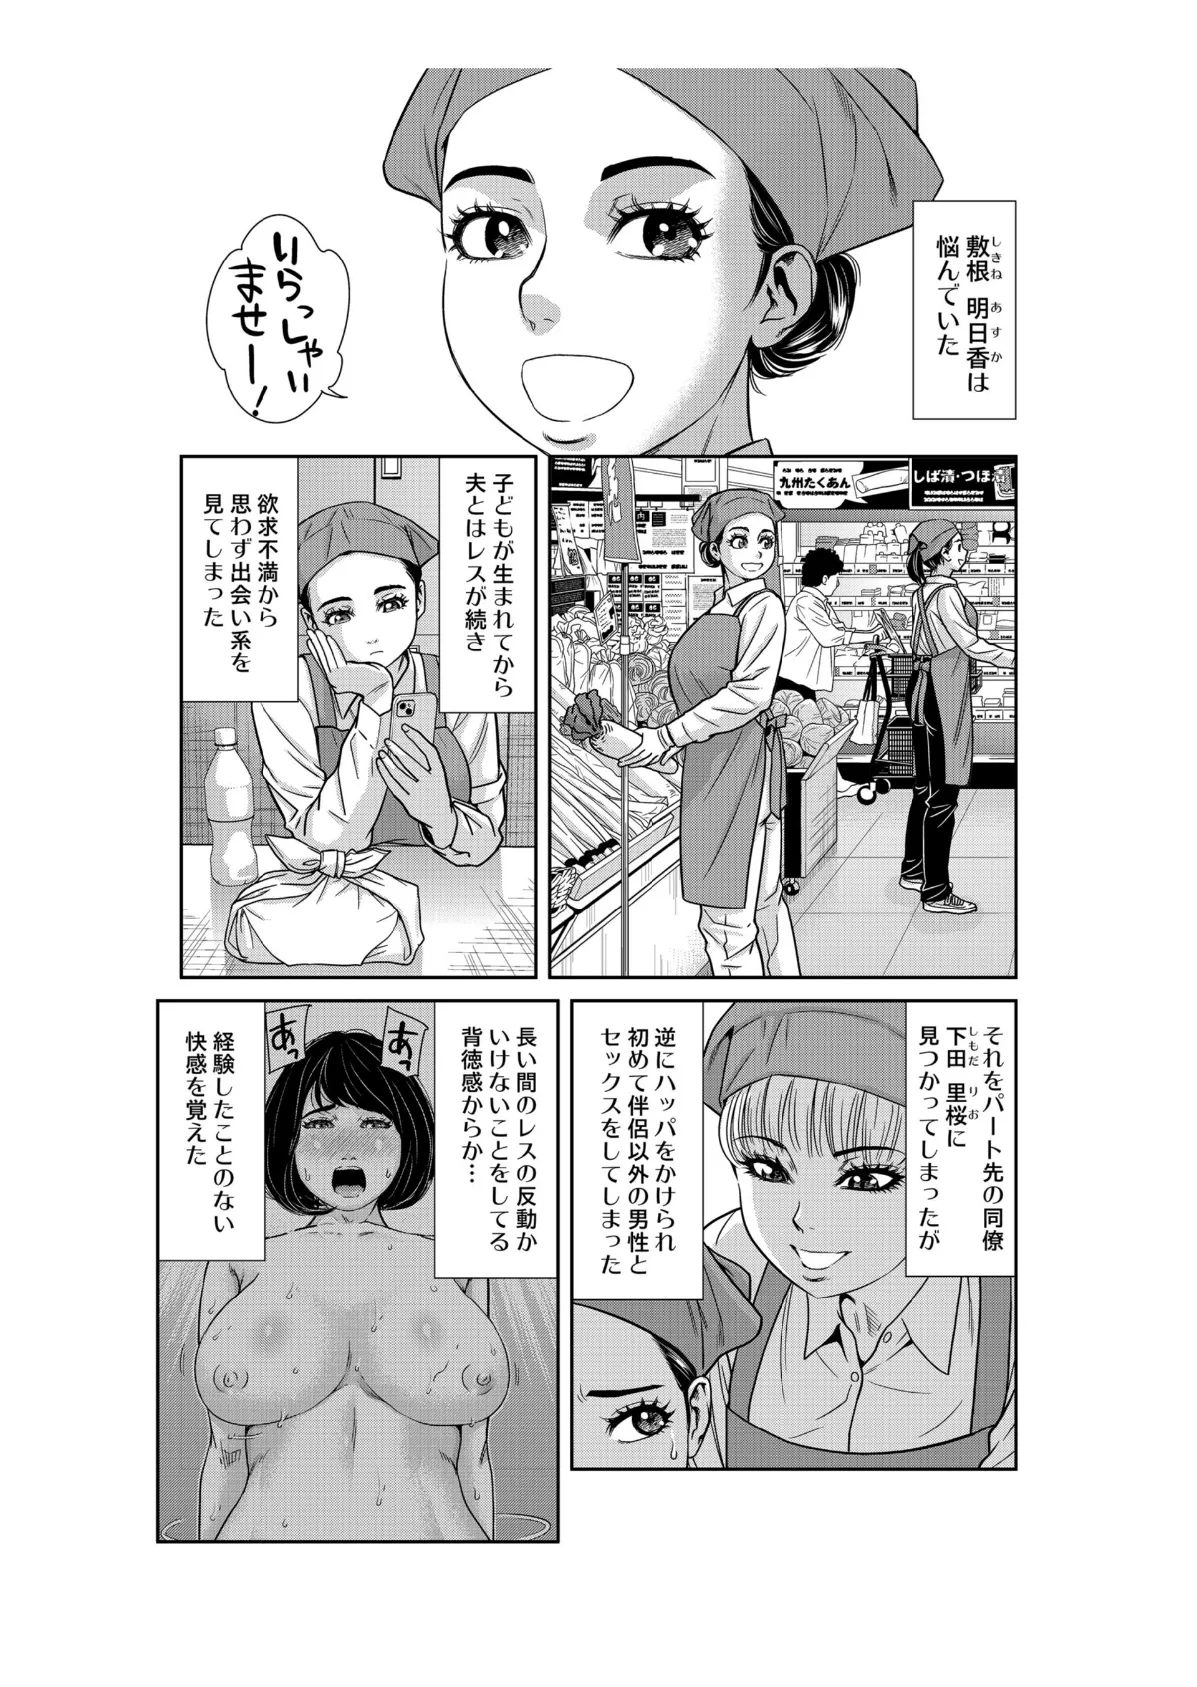 性活協同クラブー人妻たちの貪欲××漁りサークルー 8 3ページ